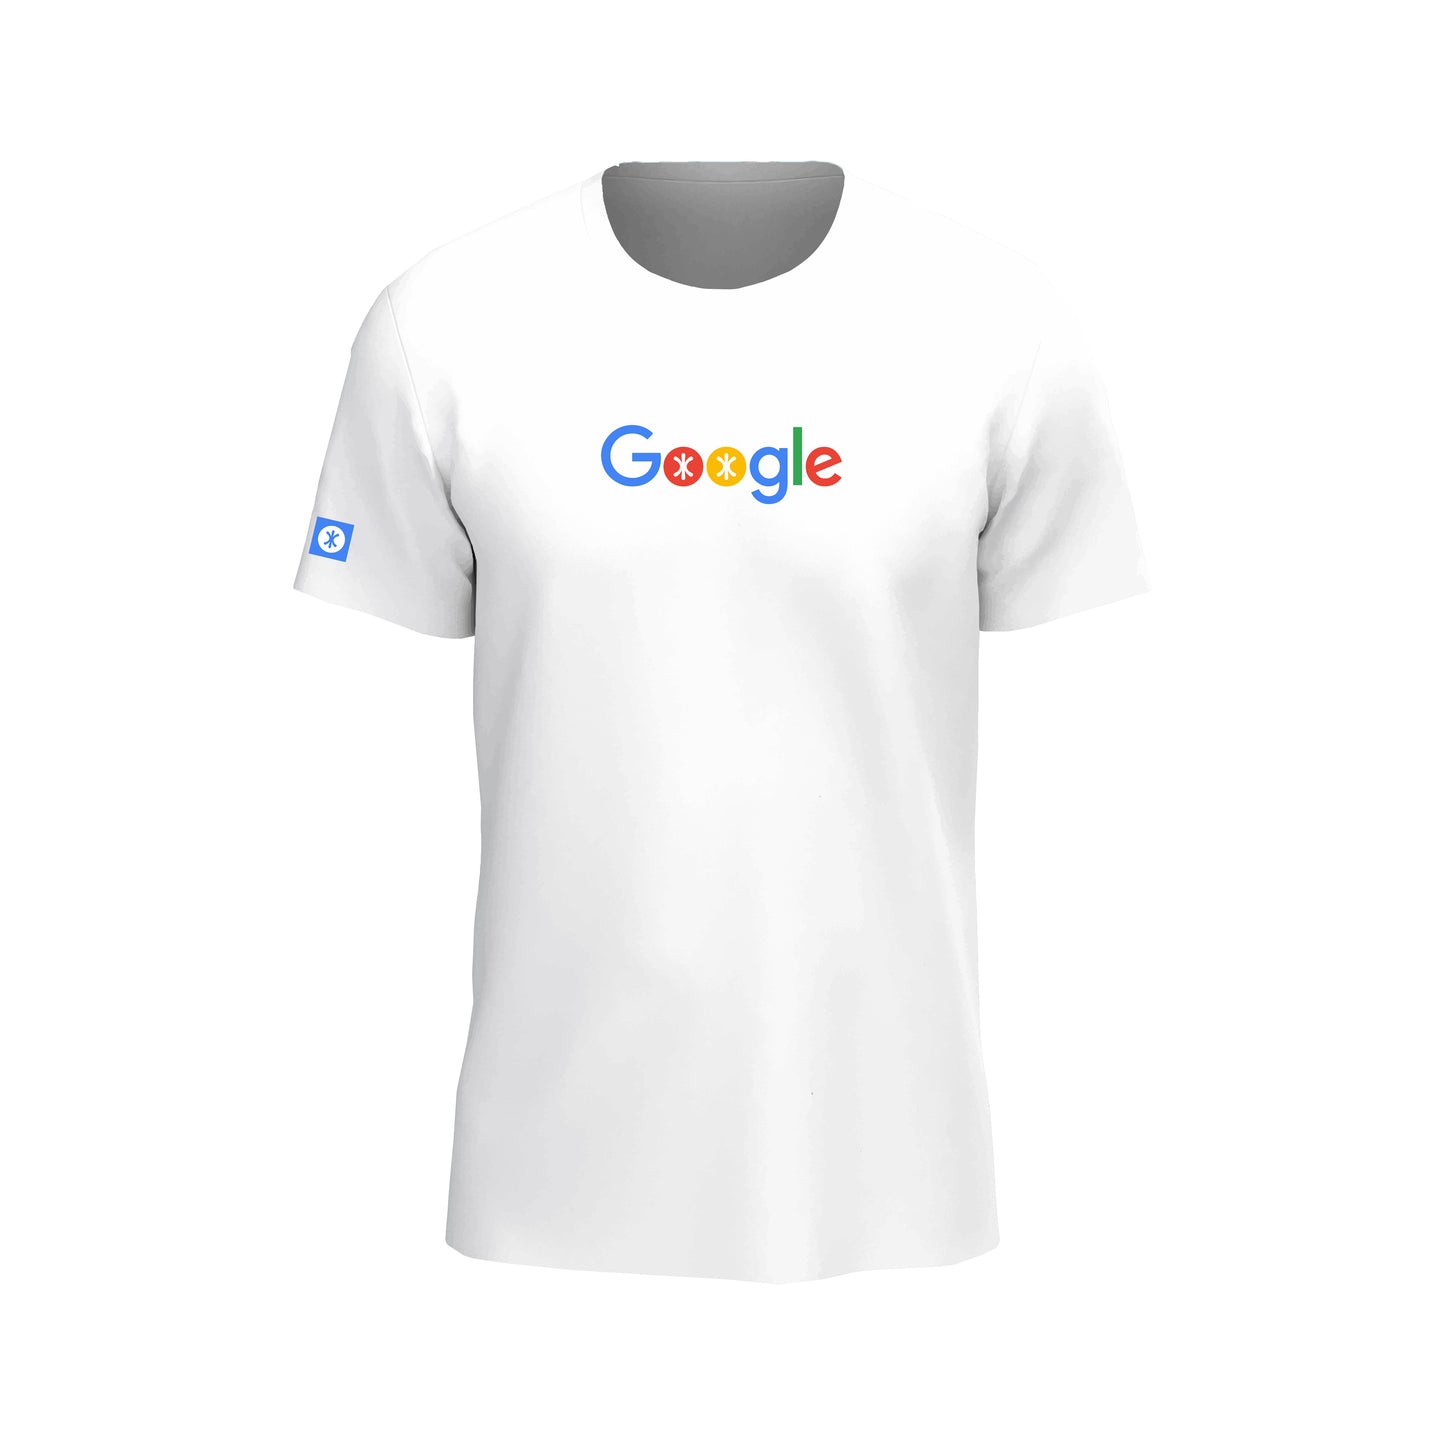 Google - T-shirt Earth Force ® par Athletic Forces - Modèle 1